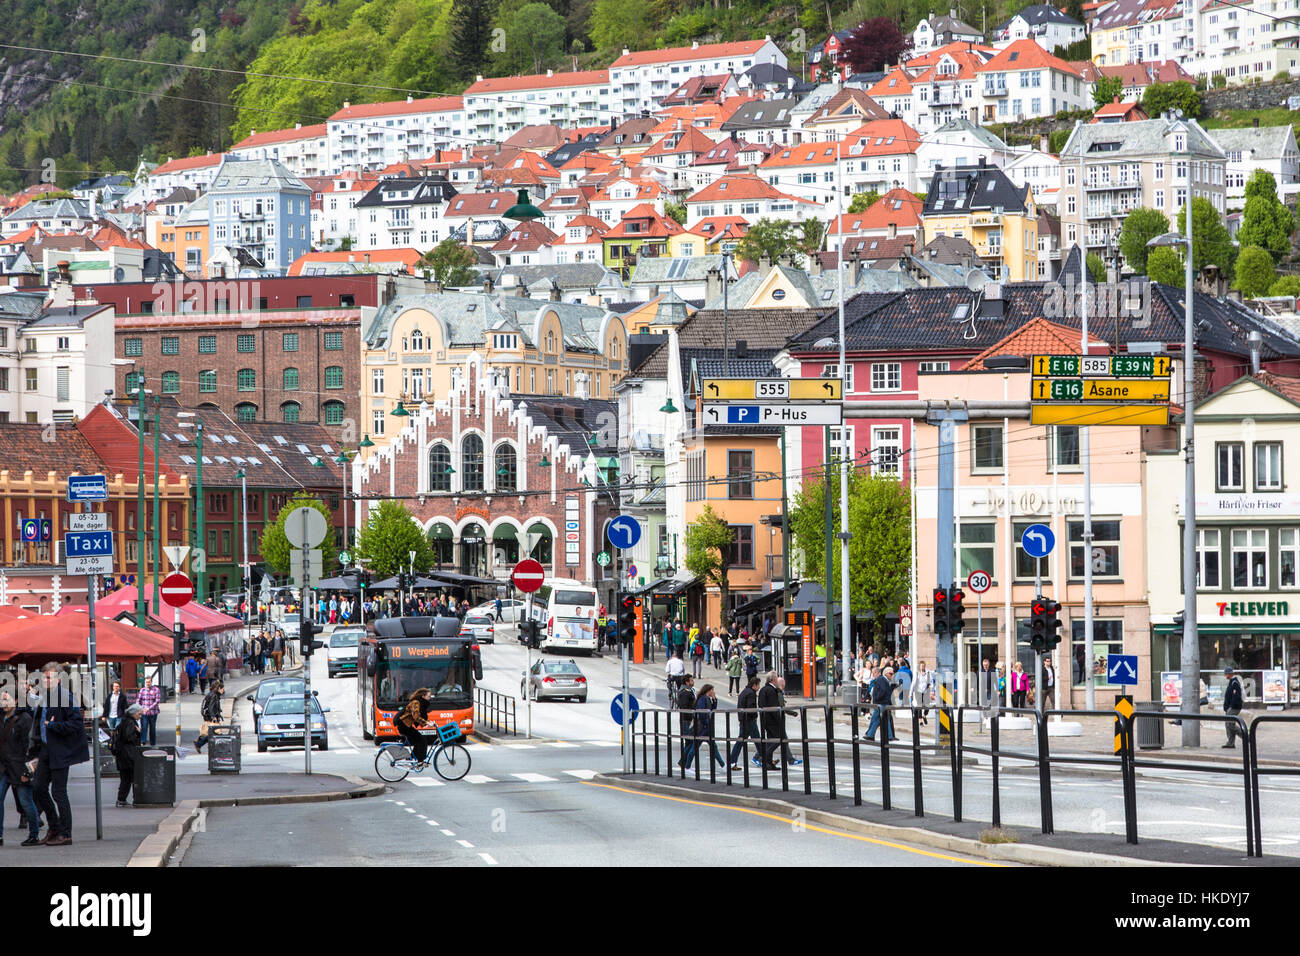 BERGEN, Norwegen - 21. Mai 2016: Ein Radfahrer und Fußgänger überqueren einer viel befahrenen Straße im historischen Bezirk von Bergen, Norwegen zweite größte Stadt. Stockfoto